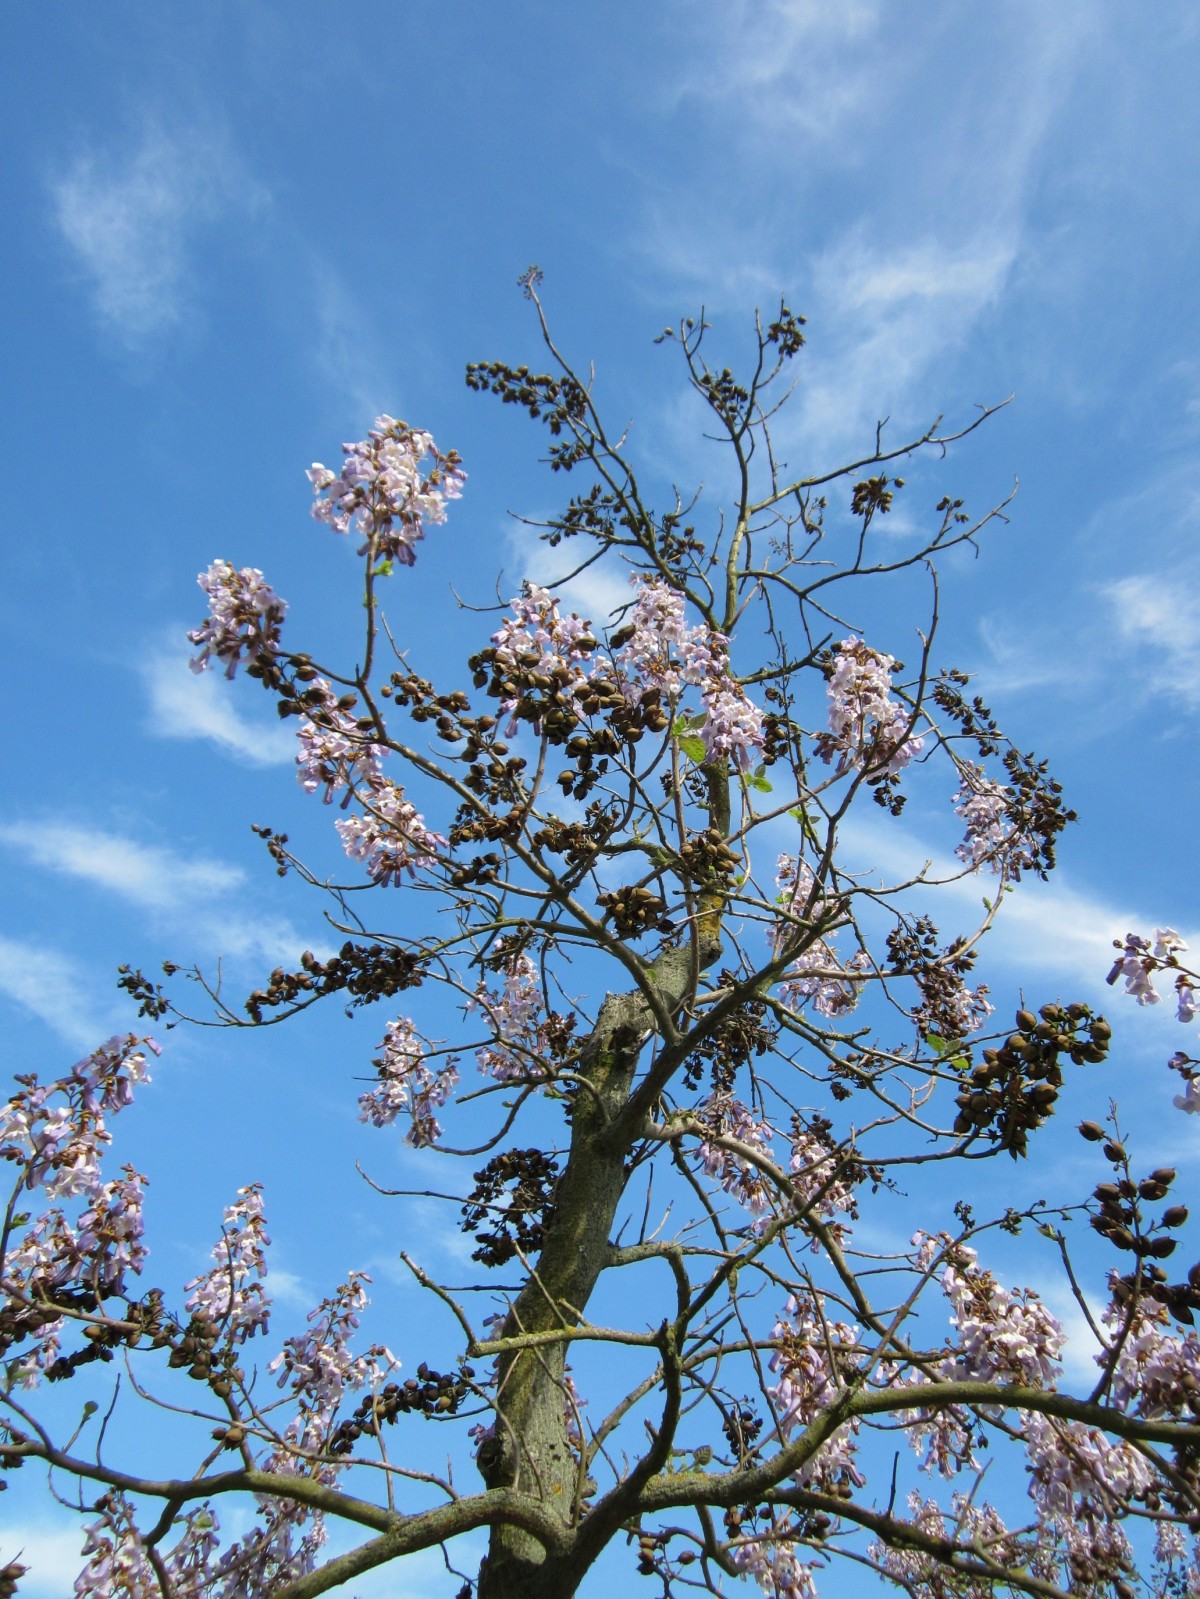 Павловния дерево фото с цветами и с листьями